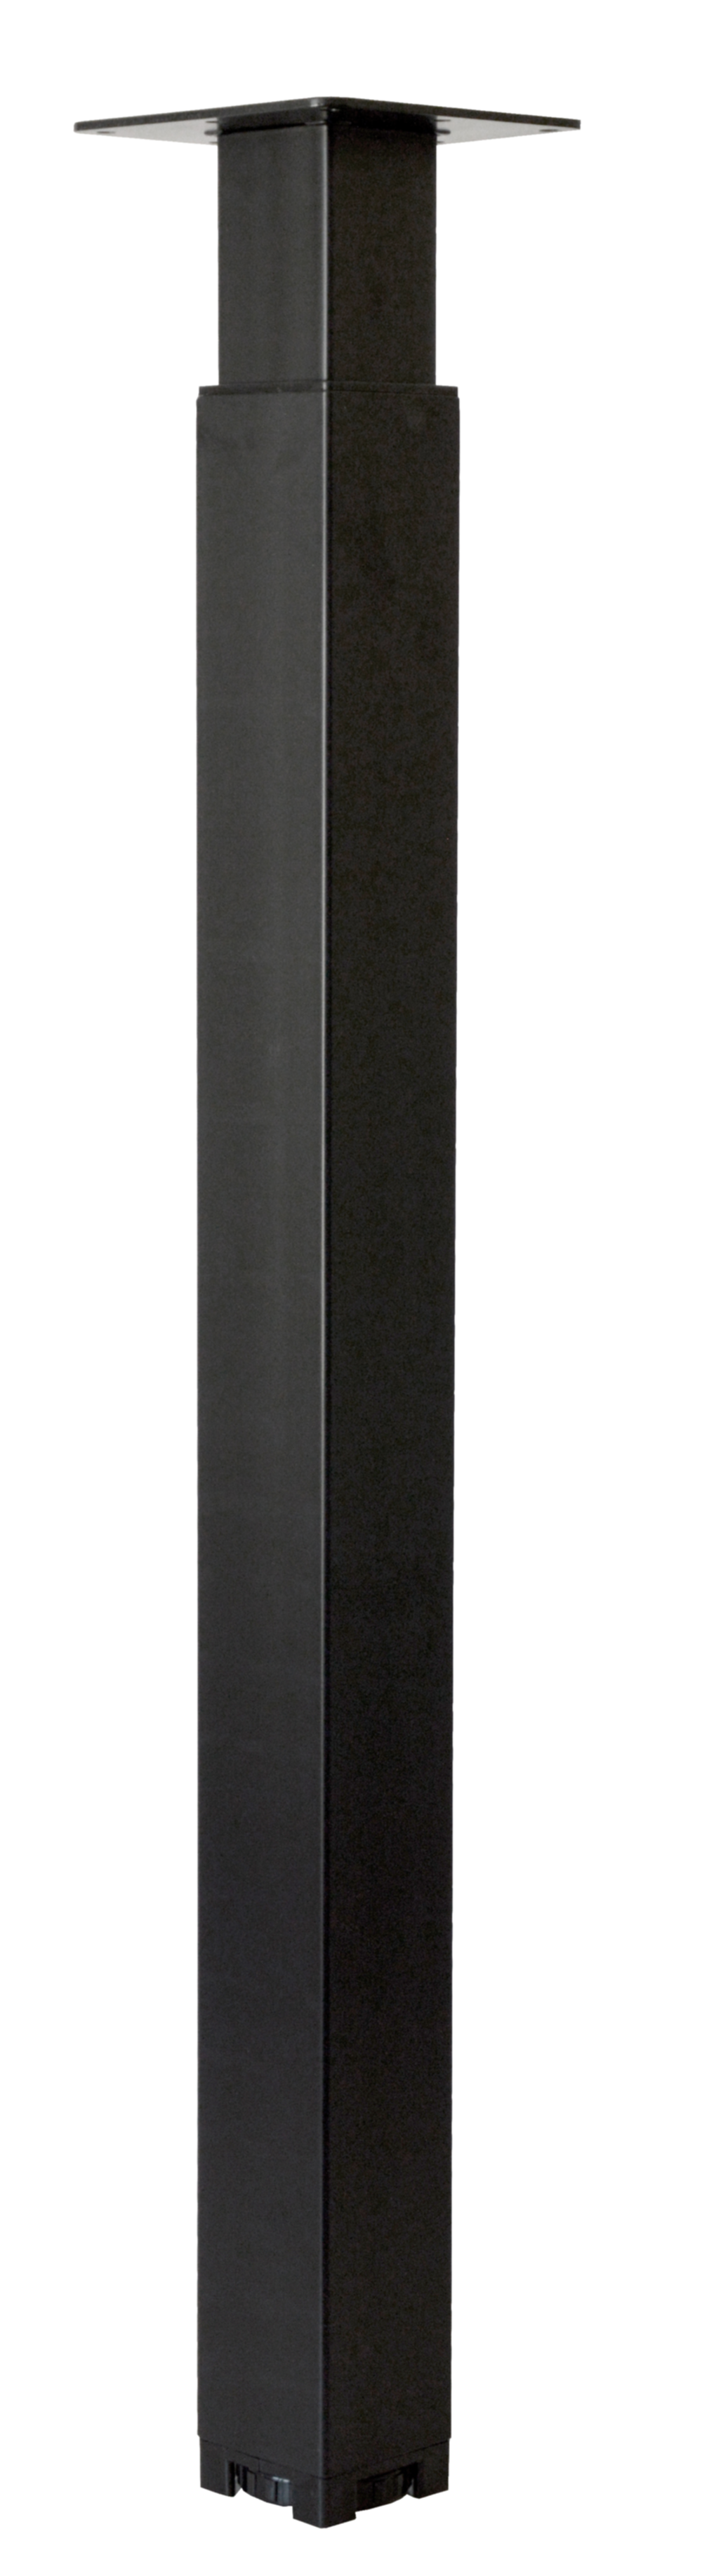 Pied de meuble réglable acier noir 60 x 60 x H700/1100 mm - CIME